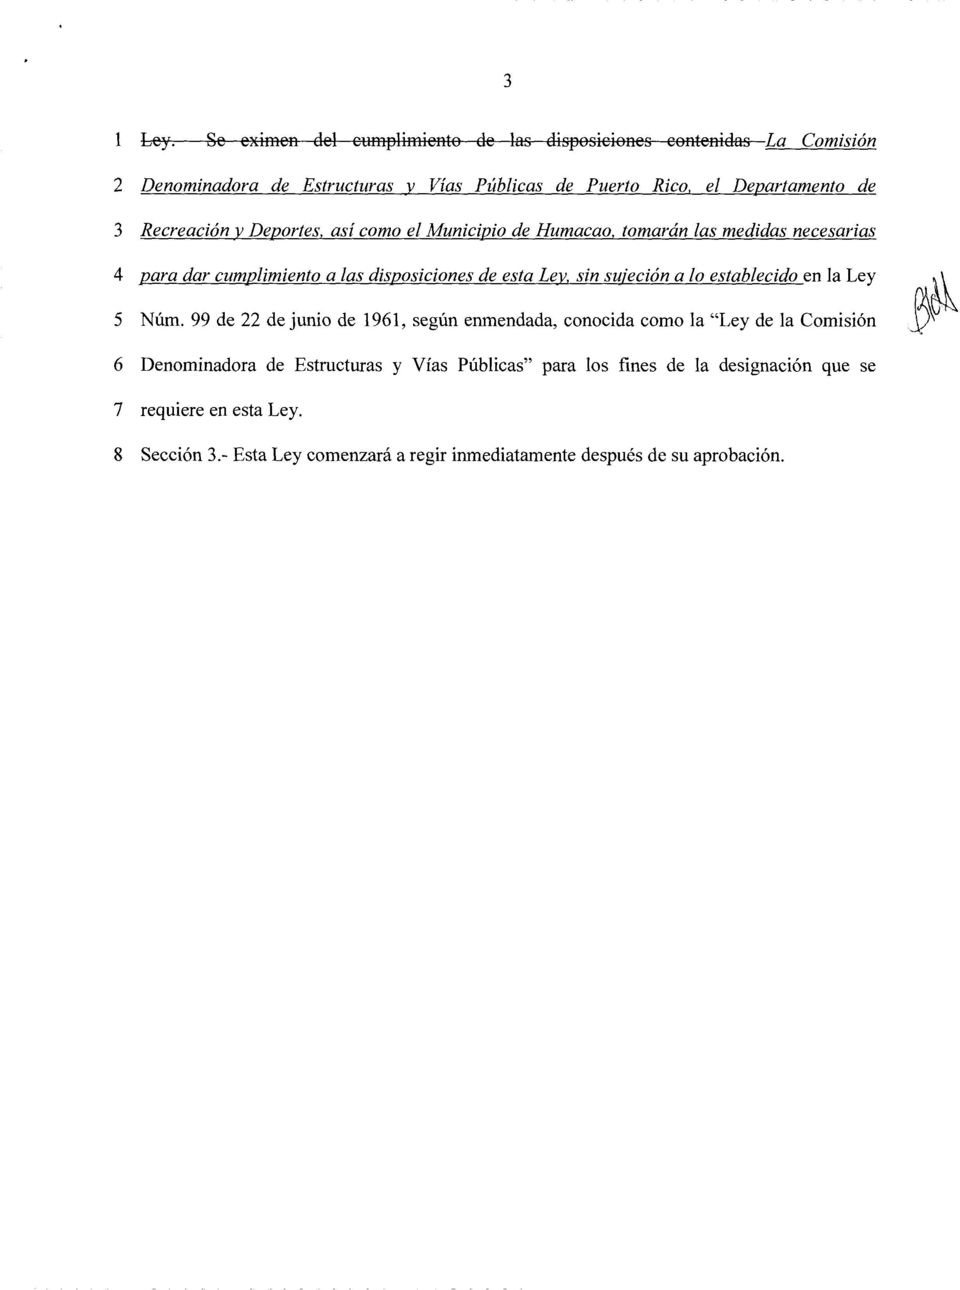 Recreaci6n y Deportes, asi coma el Municipio de Humacao, tomaran las medidas necesarias 4 para dar cumplimiento a las disposiciones de esta Lev.